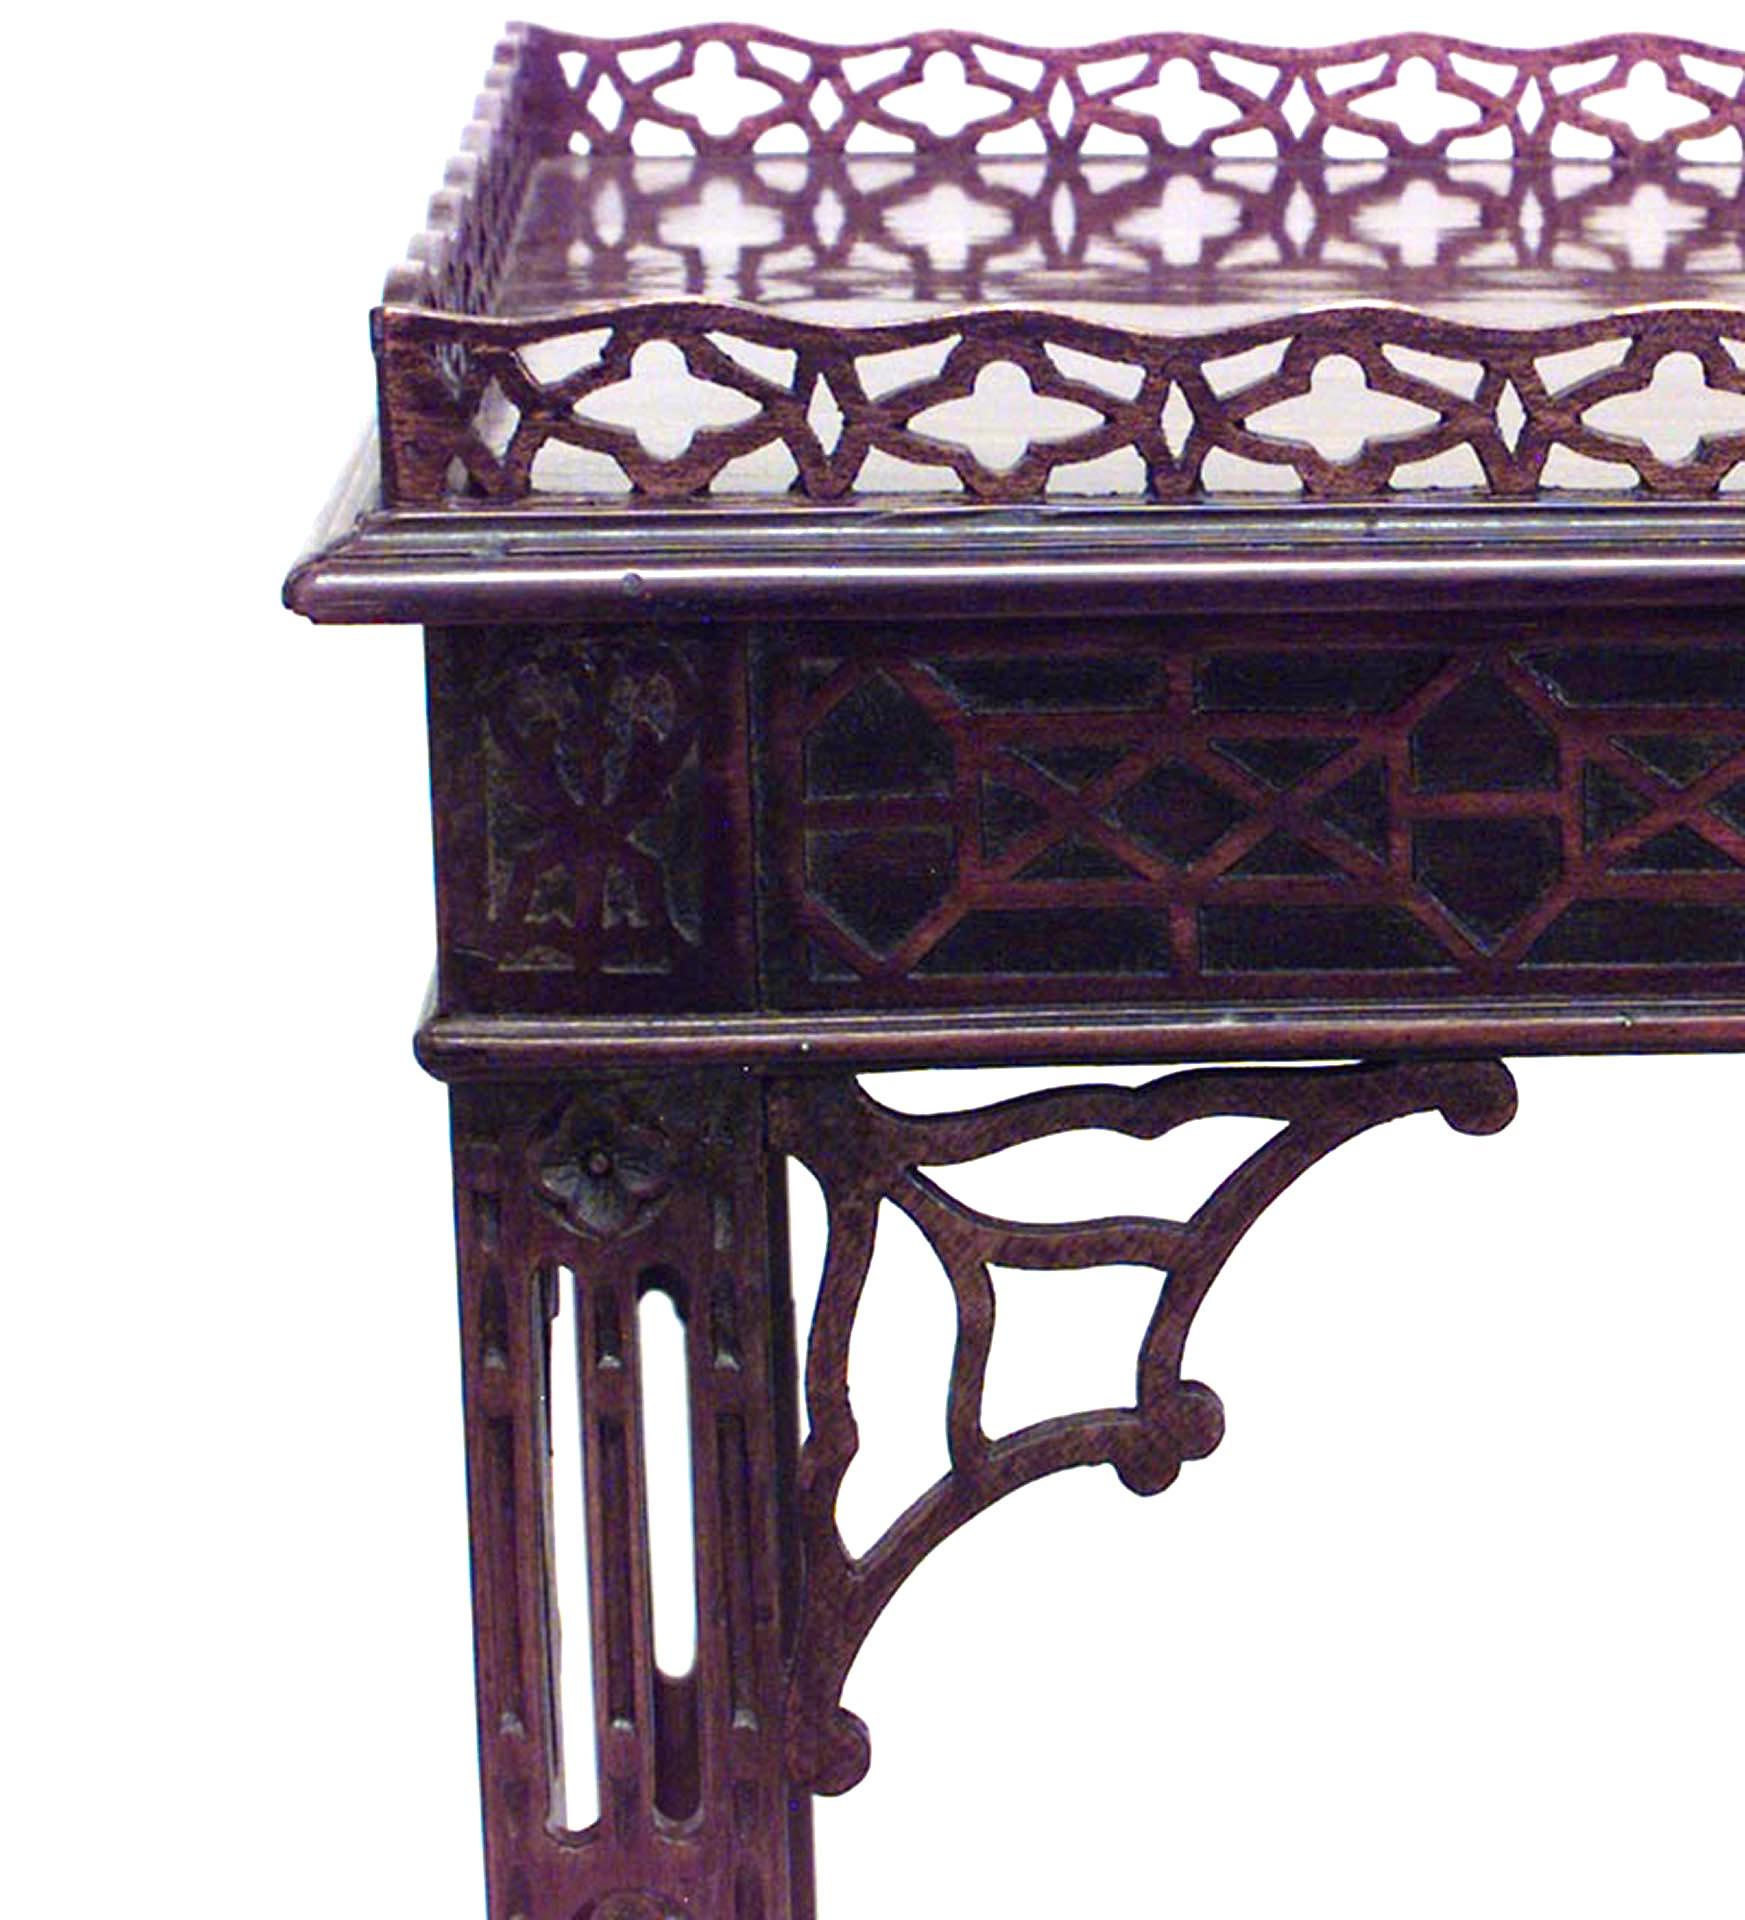 Table d'argenterie en acajou, de style chinois Chippendale (fin XIXe siècle), à décor ajouré et aveugle, avec une traverse en X supportant un plateau inférieur à roulettes en cuir.
